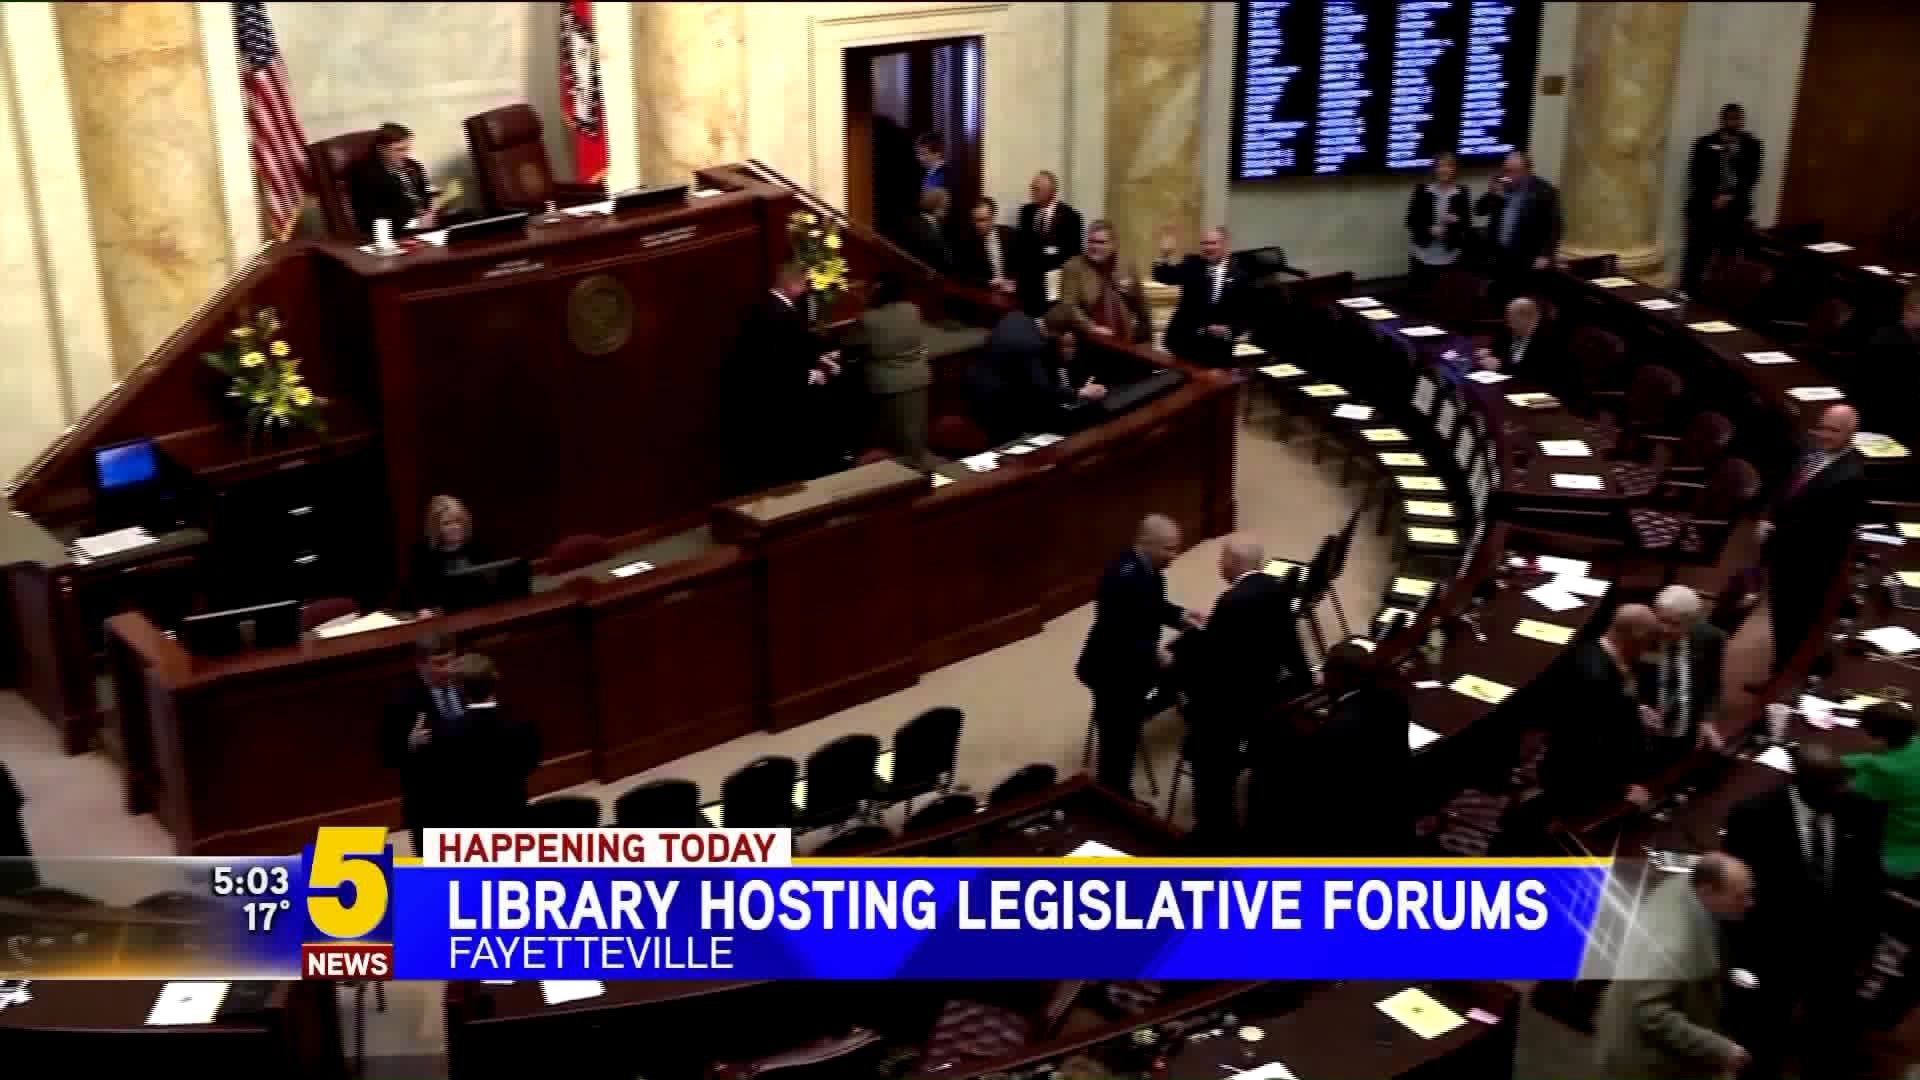 Legislative Forums in Fayetteville